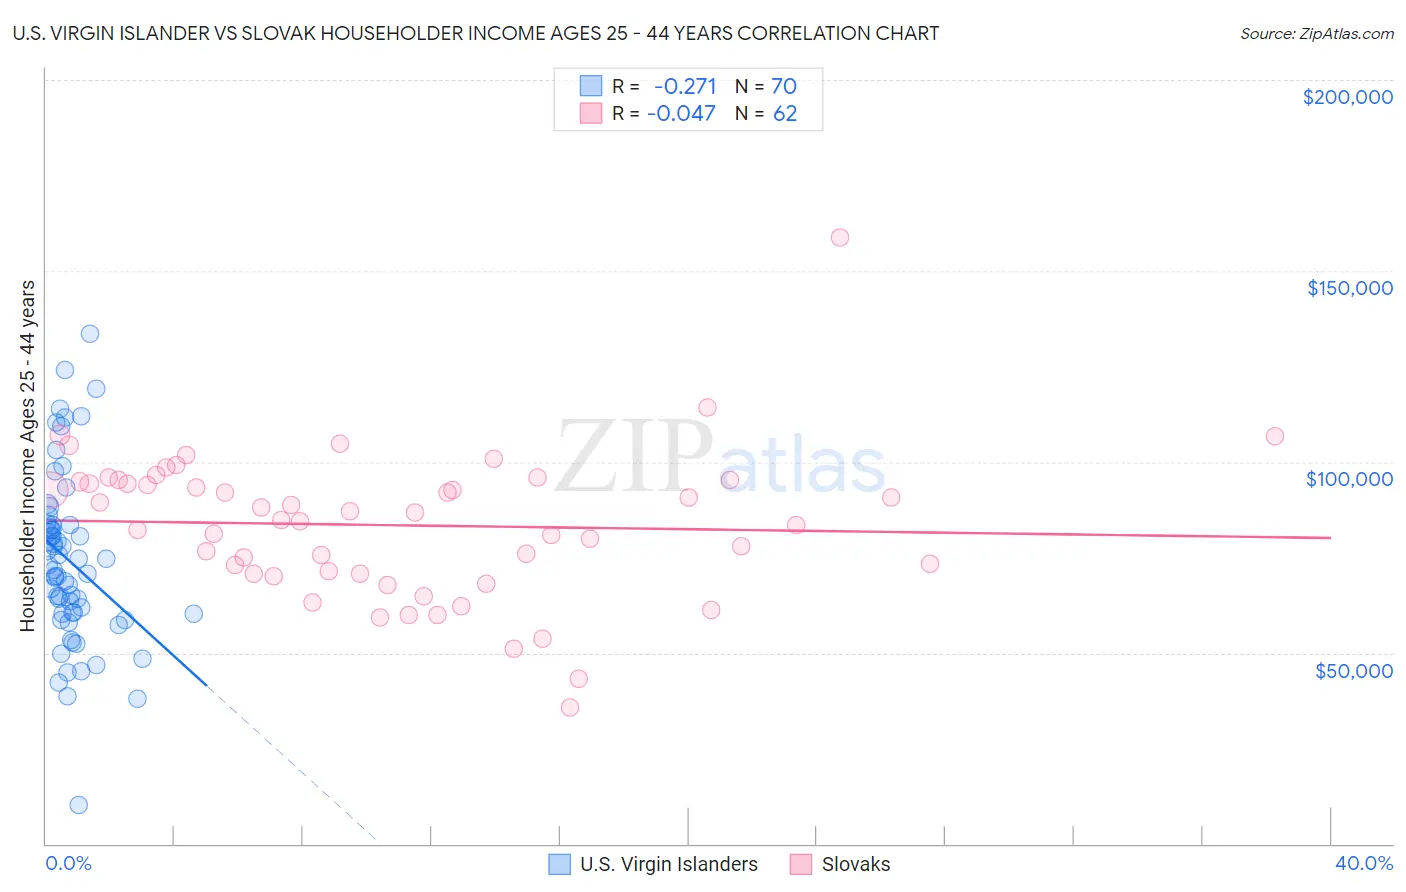 U.S. Virgin Islander vs Slovak Householder Income Ages 25 - 44 years